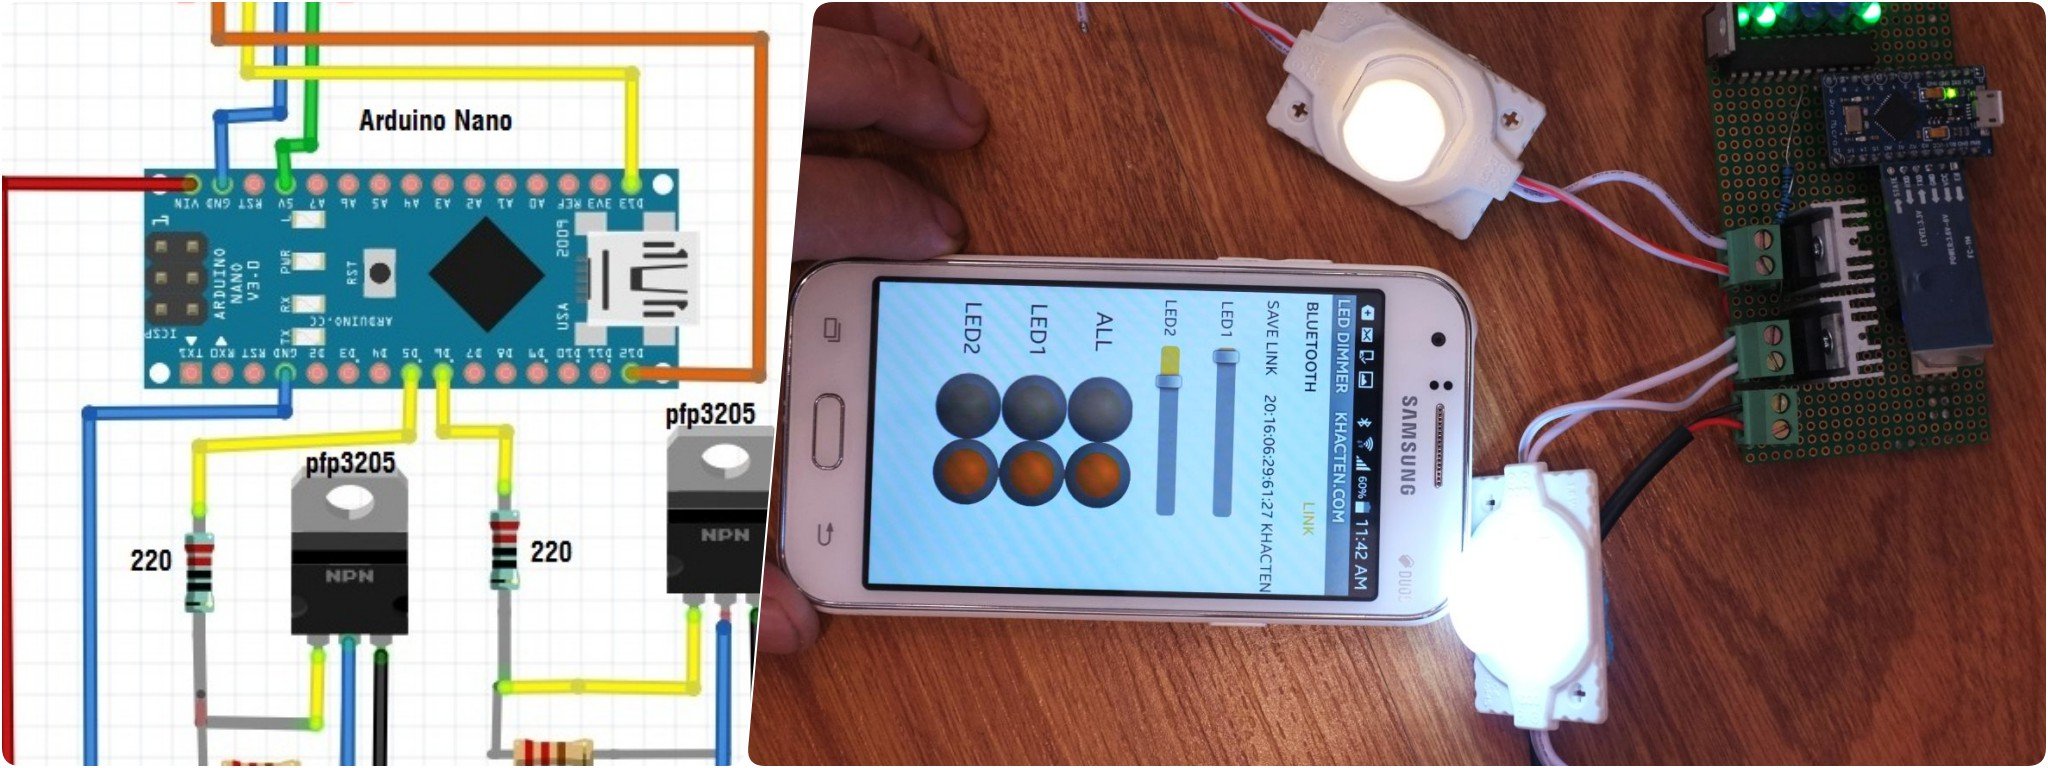 [DIY] Tự làm hệ thống đèn điều khiển bằng smartphone